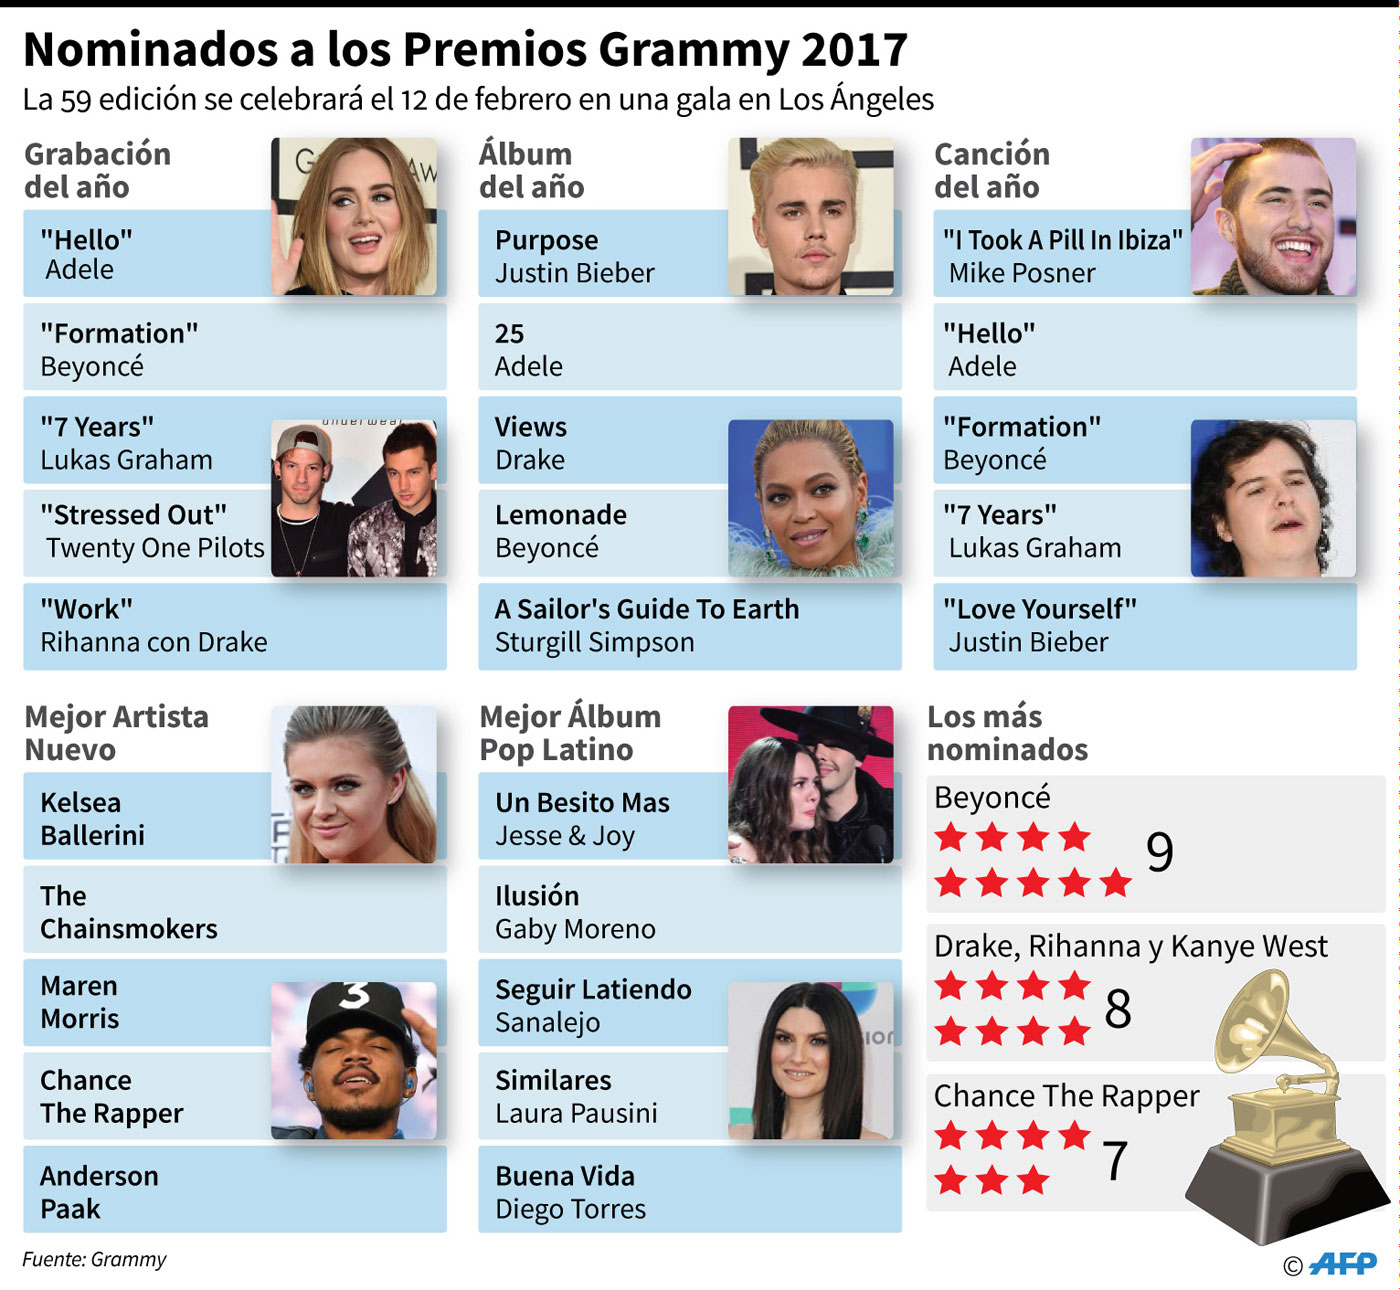 Una batalla de divas y quizás también política en el Grammy